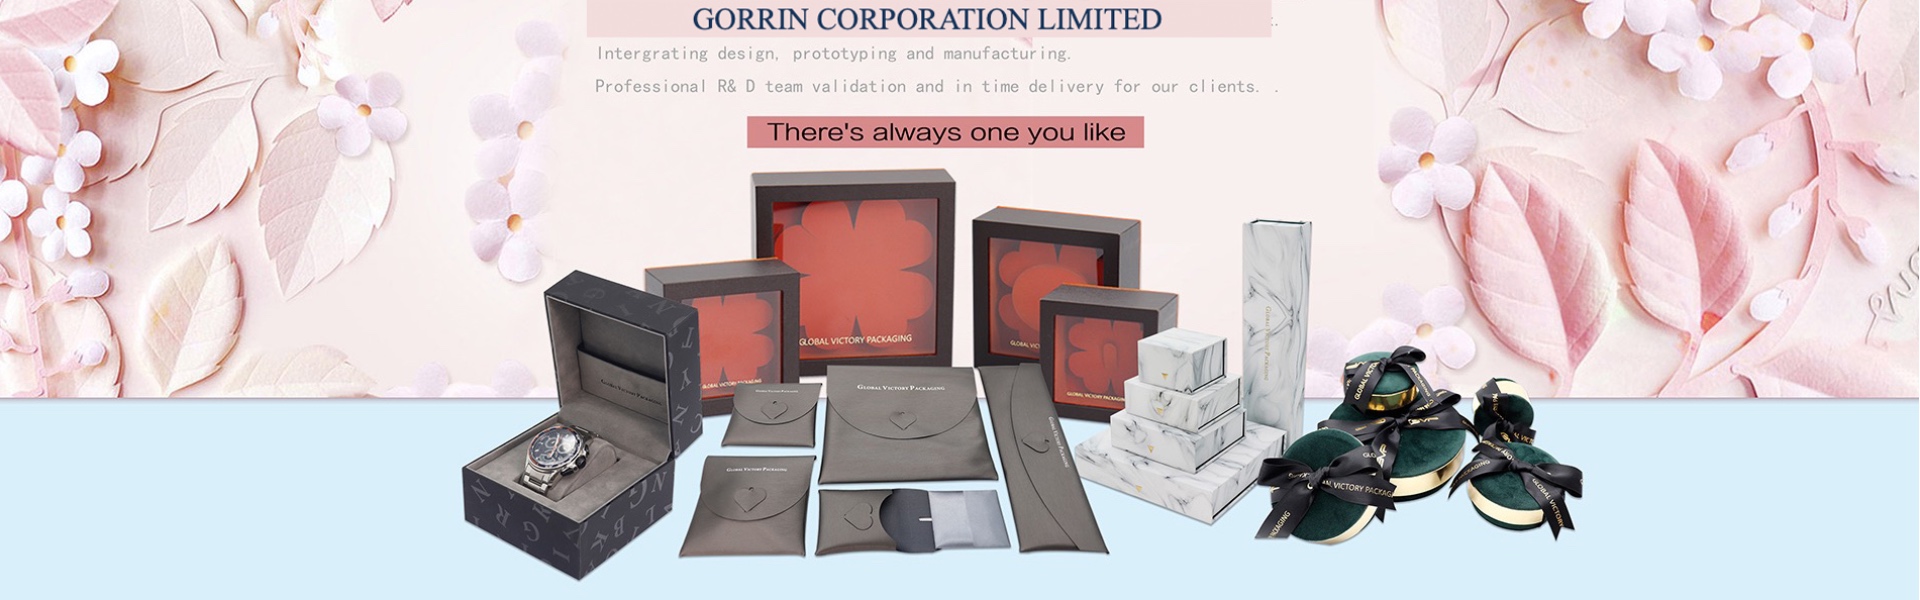 papirkasse, smykker, smykkeskrin,Gorrin corporation limited